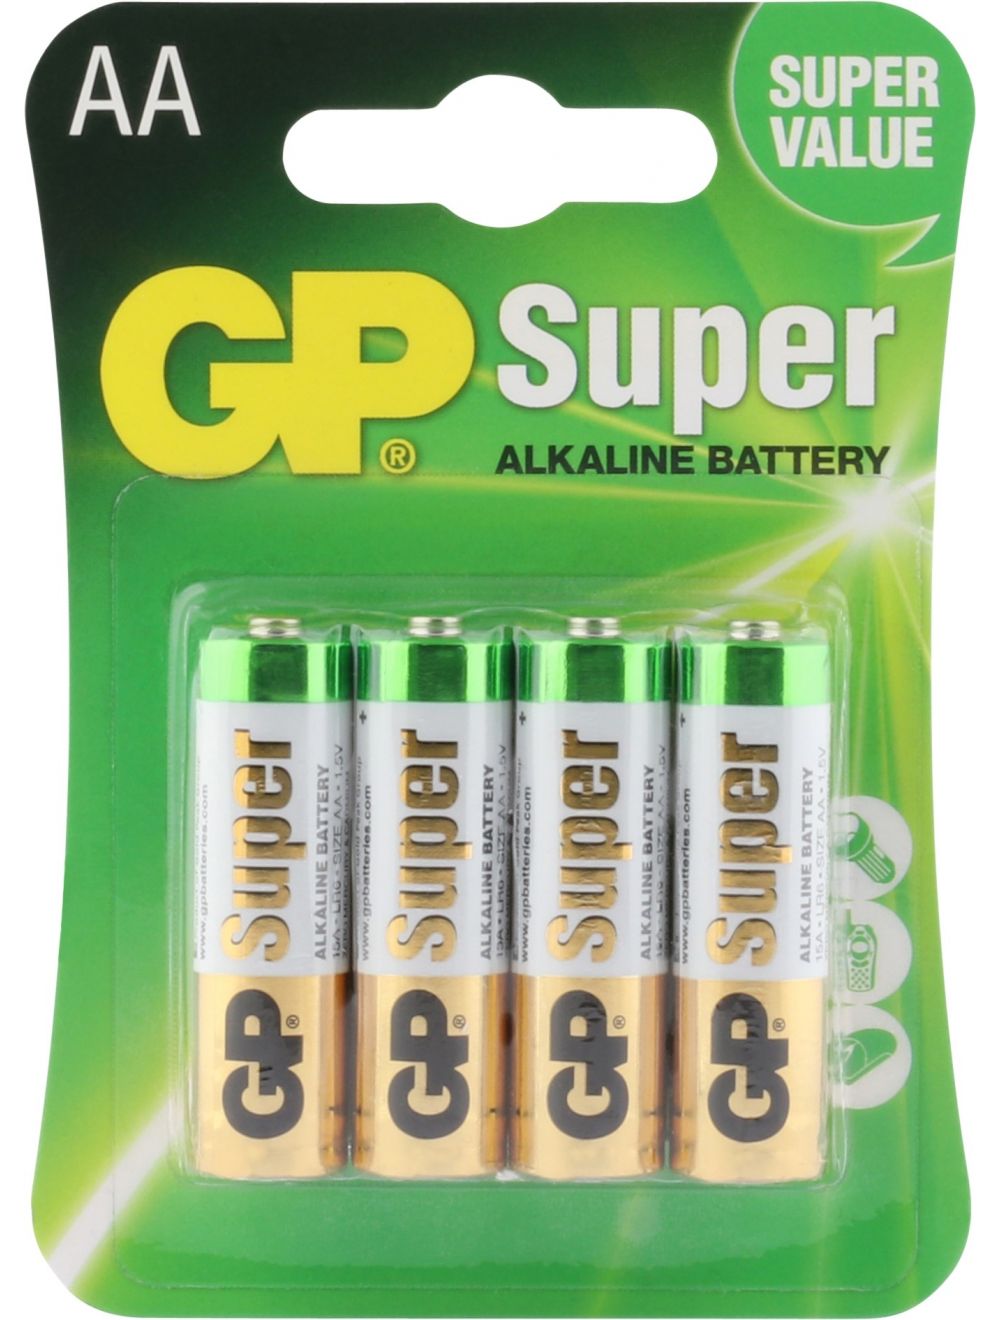 leven Vallen Nathaniel Ward GP Alkaline Super AA Batterij 4 Stuks kopen? Zaklampen.nl